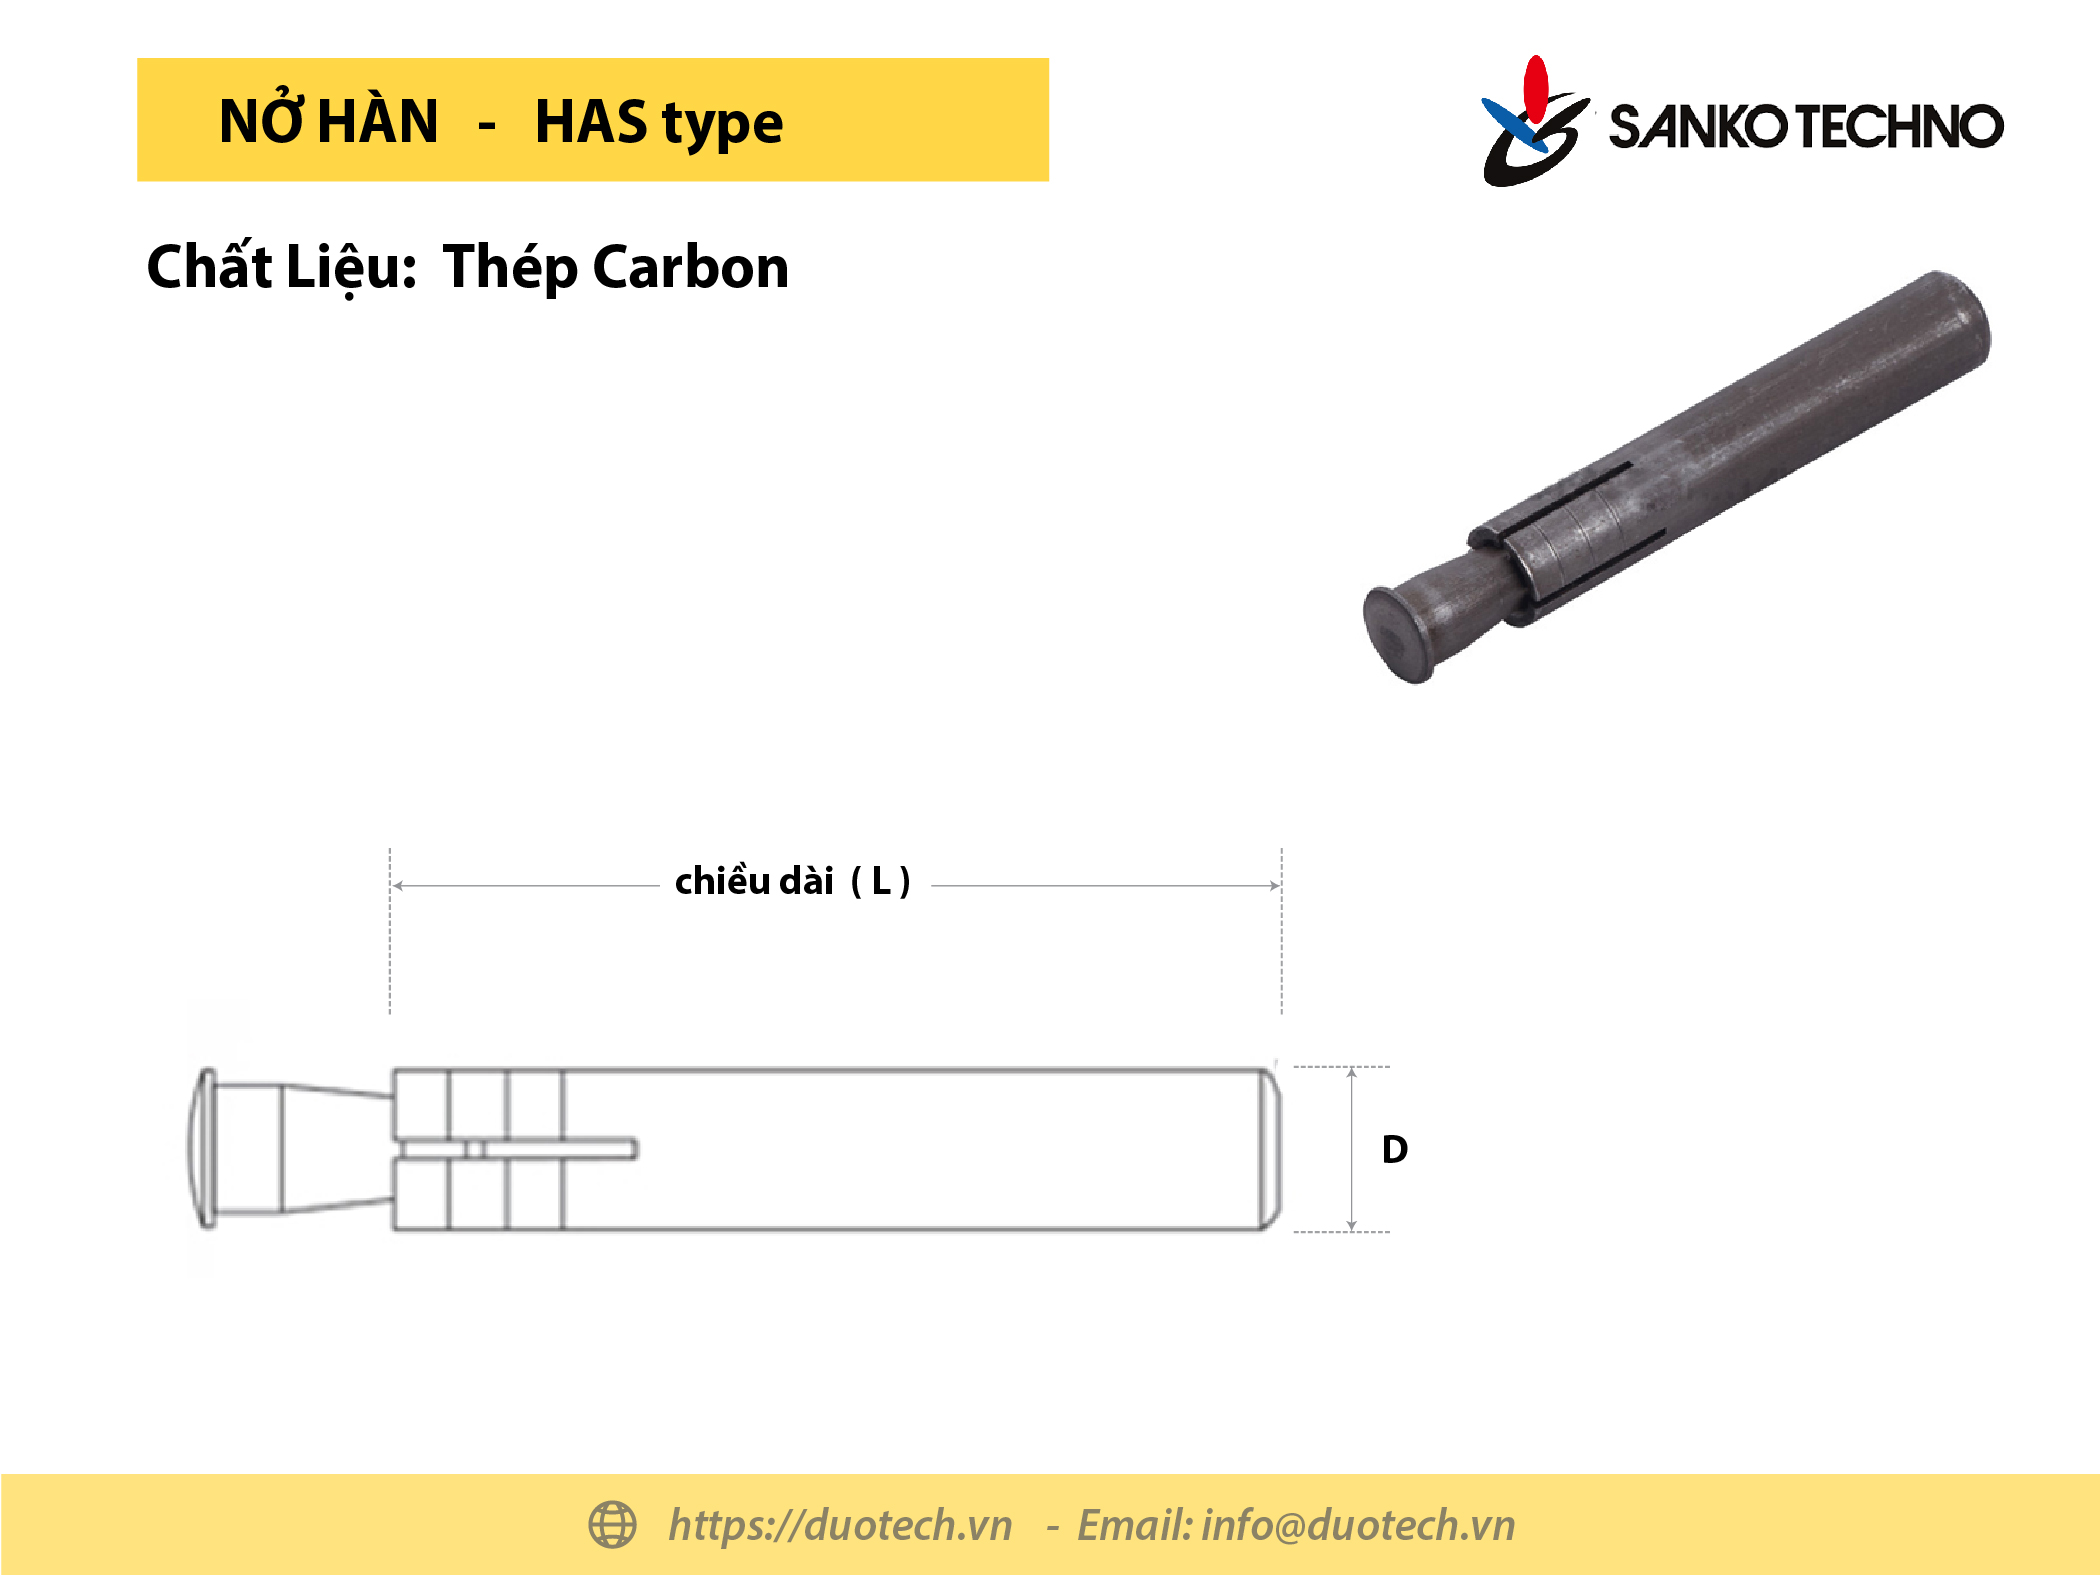 Bulong tắc kê nở hàn thương hiệu maker Sanko techno Nhật Bản HAS-1040 , chiều dài L = 40 mm, đường kính thân nở 10.0